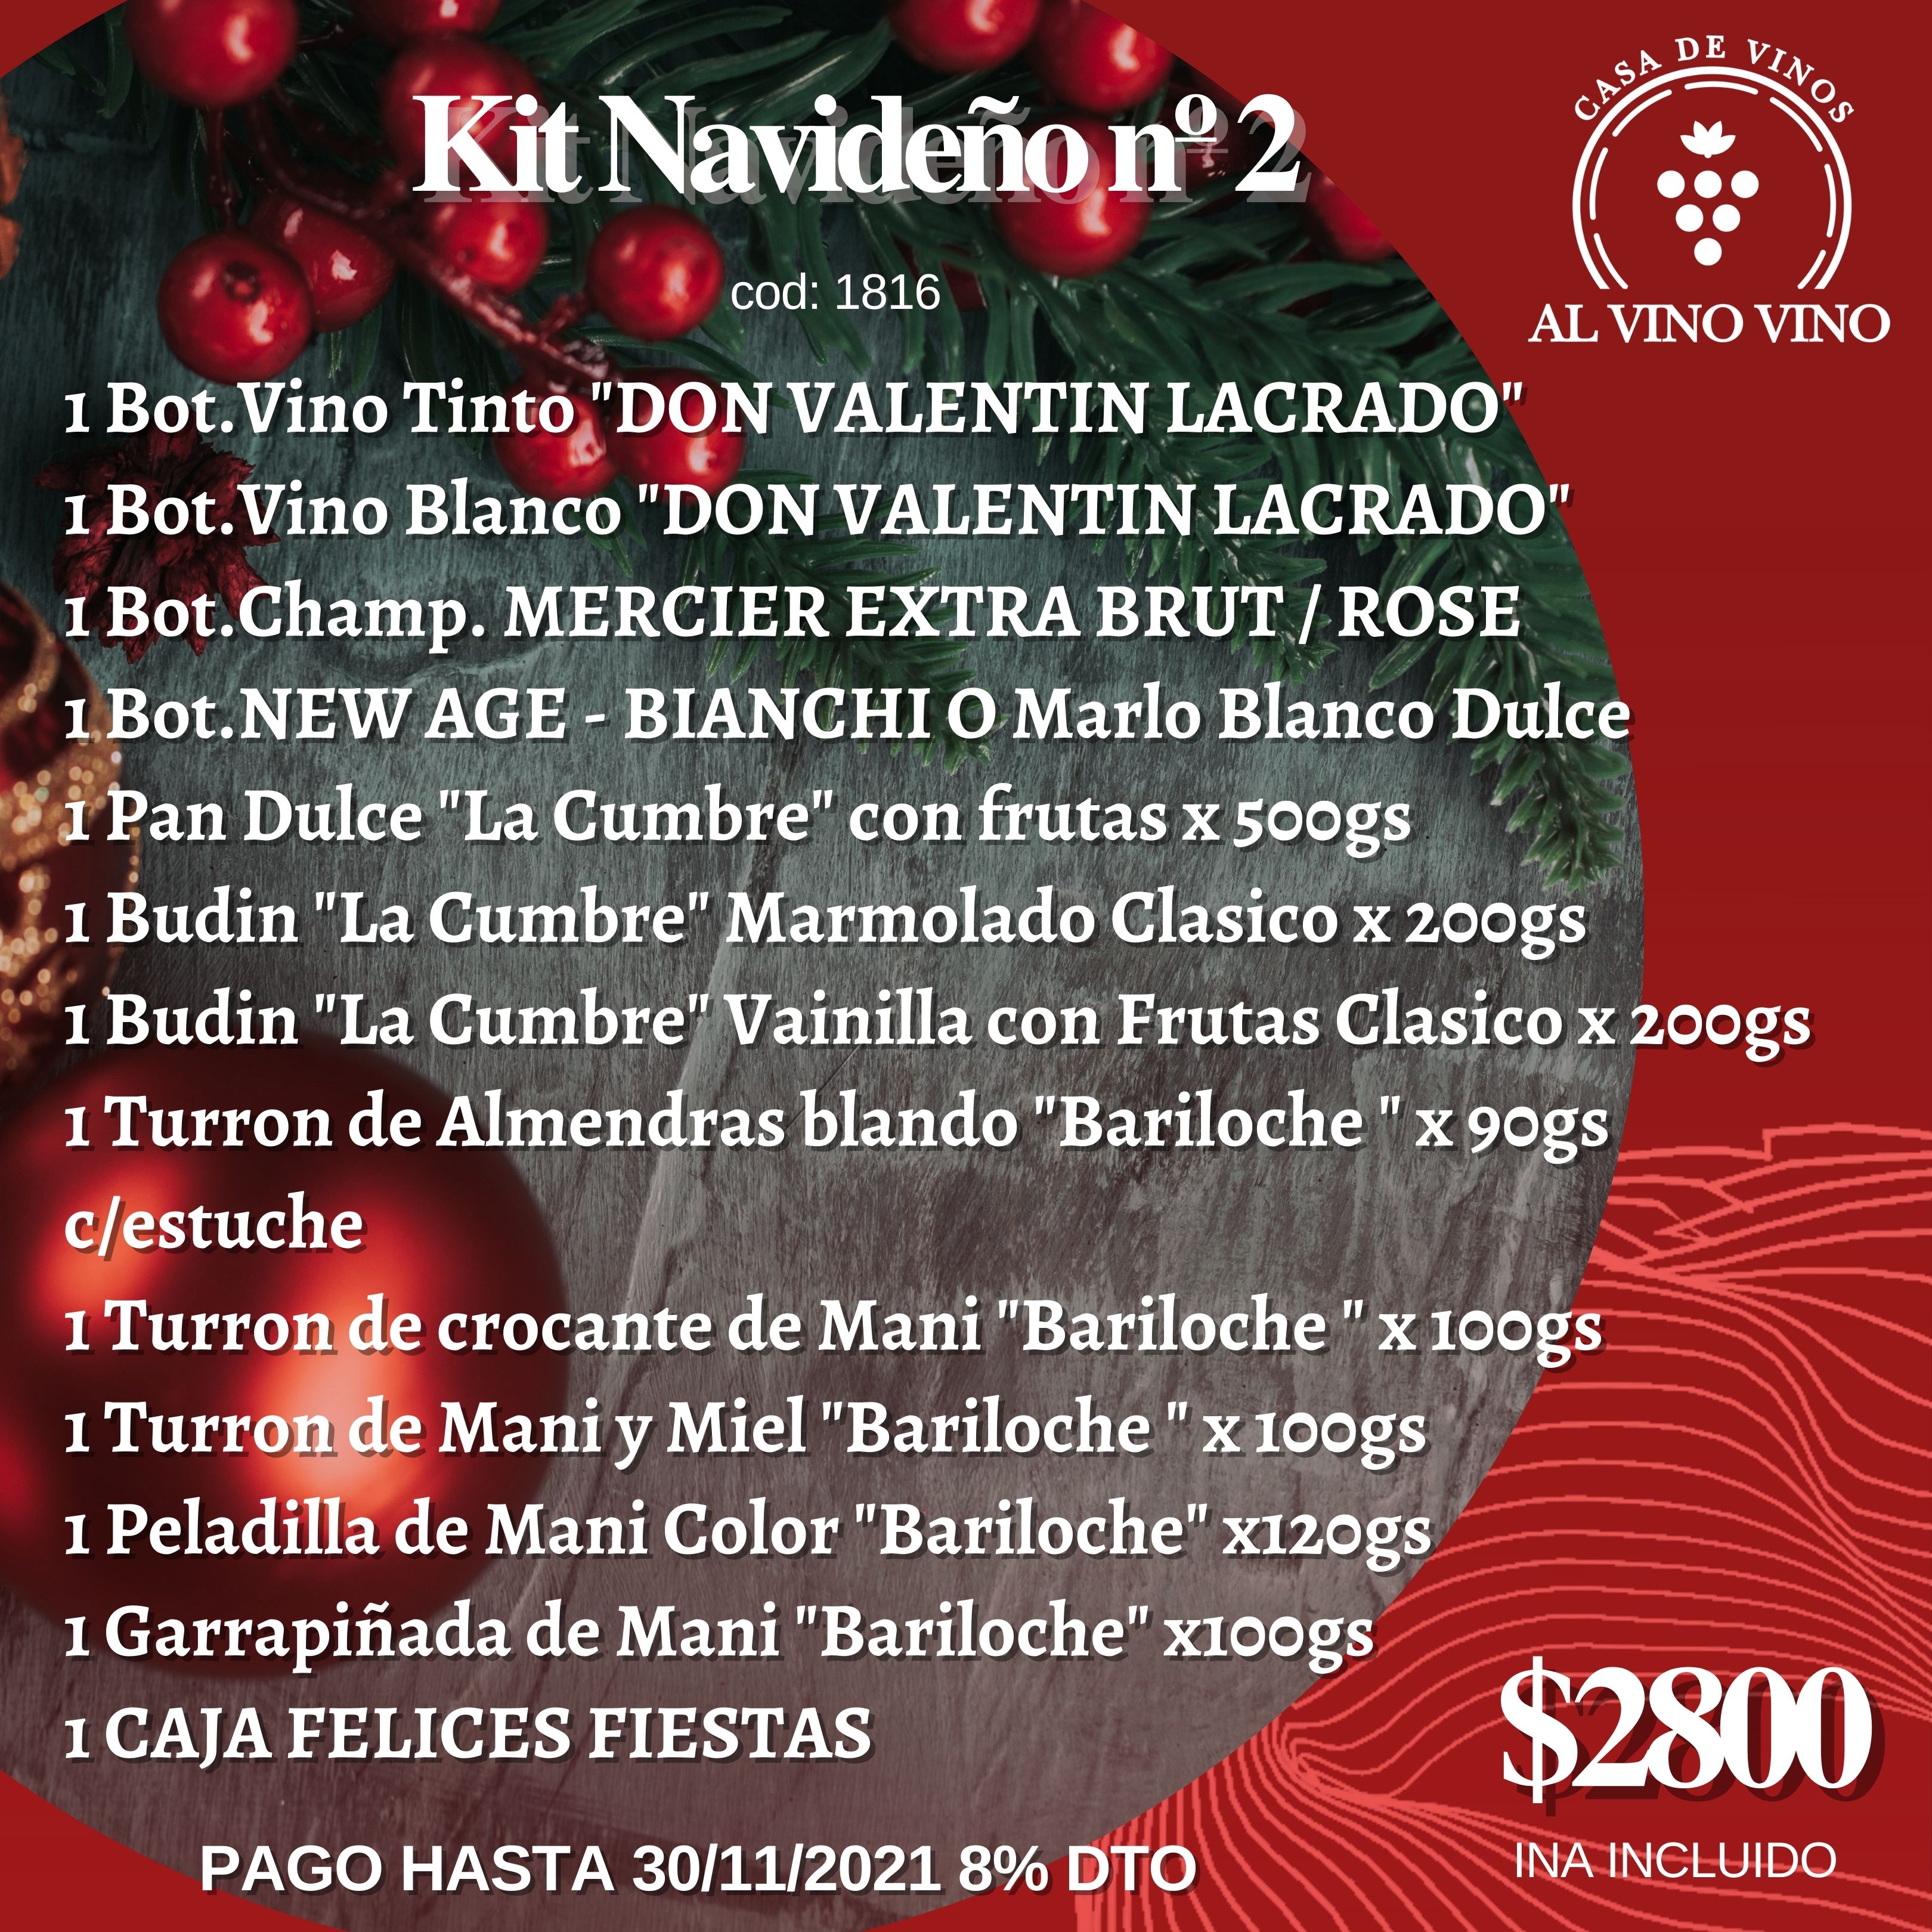 Kit Navideños 02 2021 Don Valentin